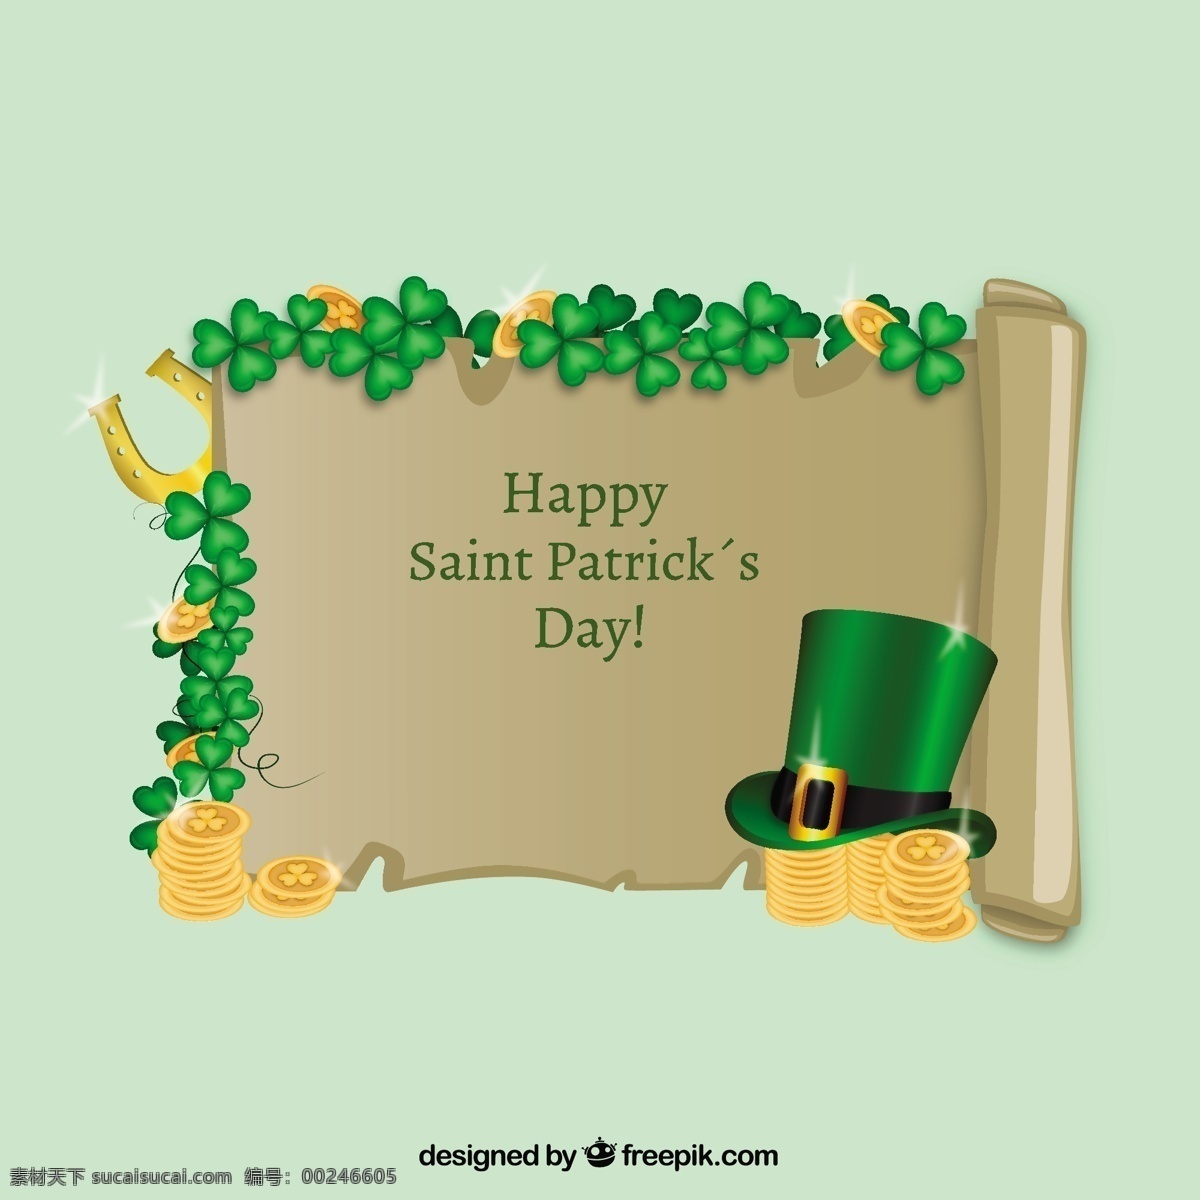 圣 巴特里克 节 羊皮 帽 绿色的帽子 节日 三叶草 羊皮纸 圣帕特里克日 好 马蹄 爱尔兰 一天 圣帕特里克 运气 好运 帕特里克 传统 绿色